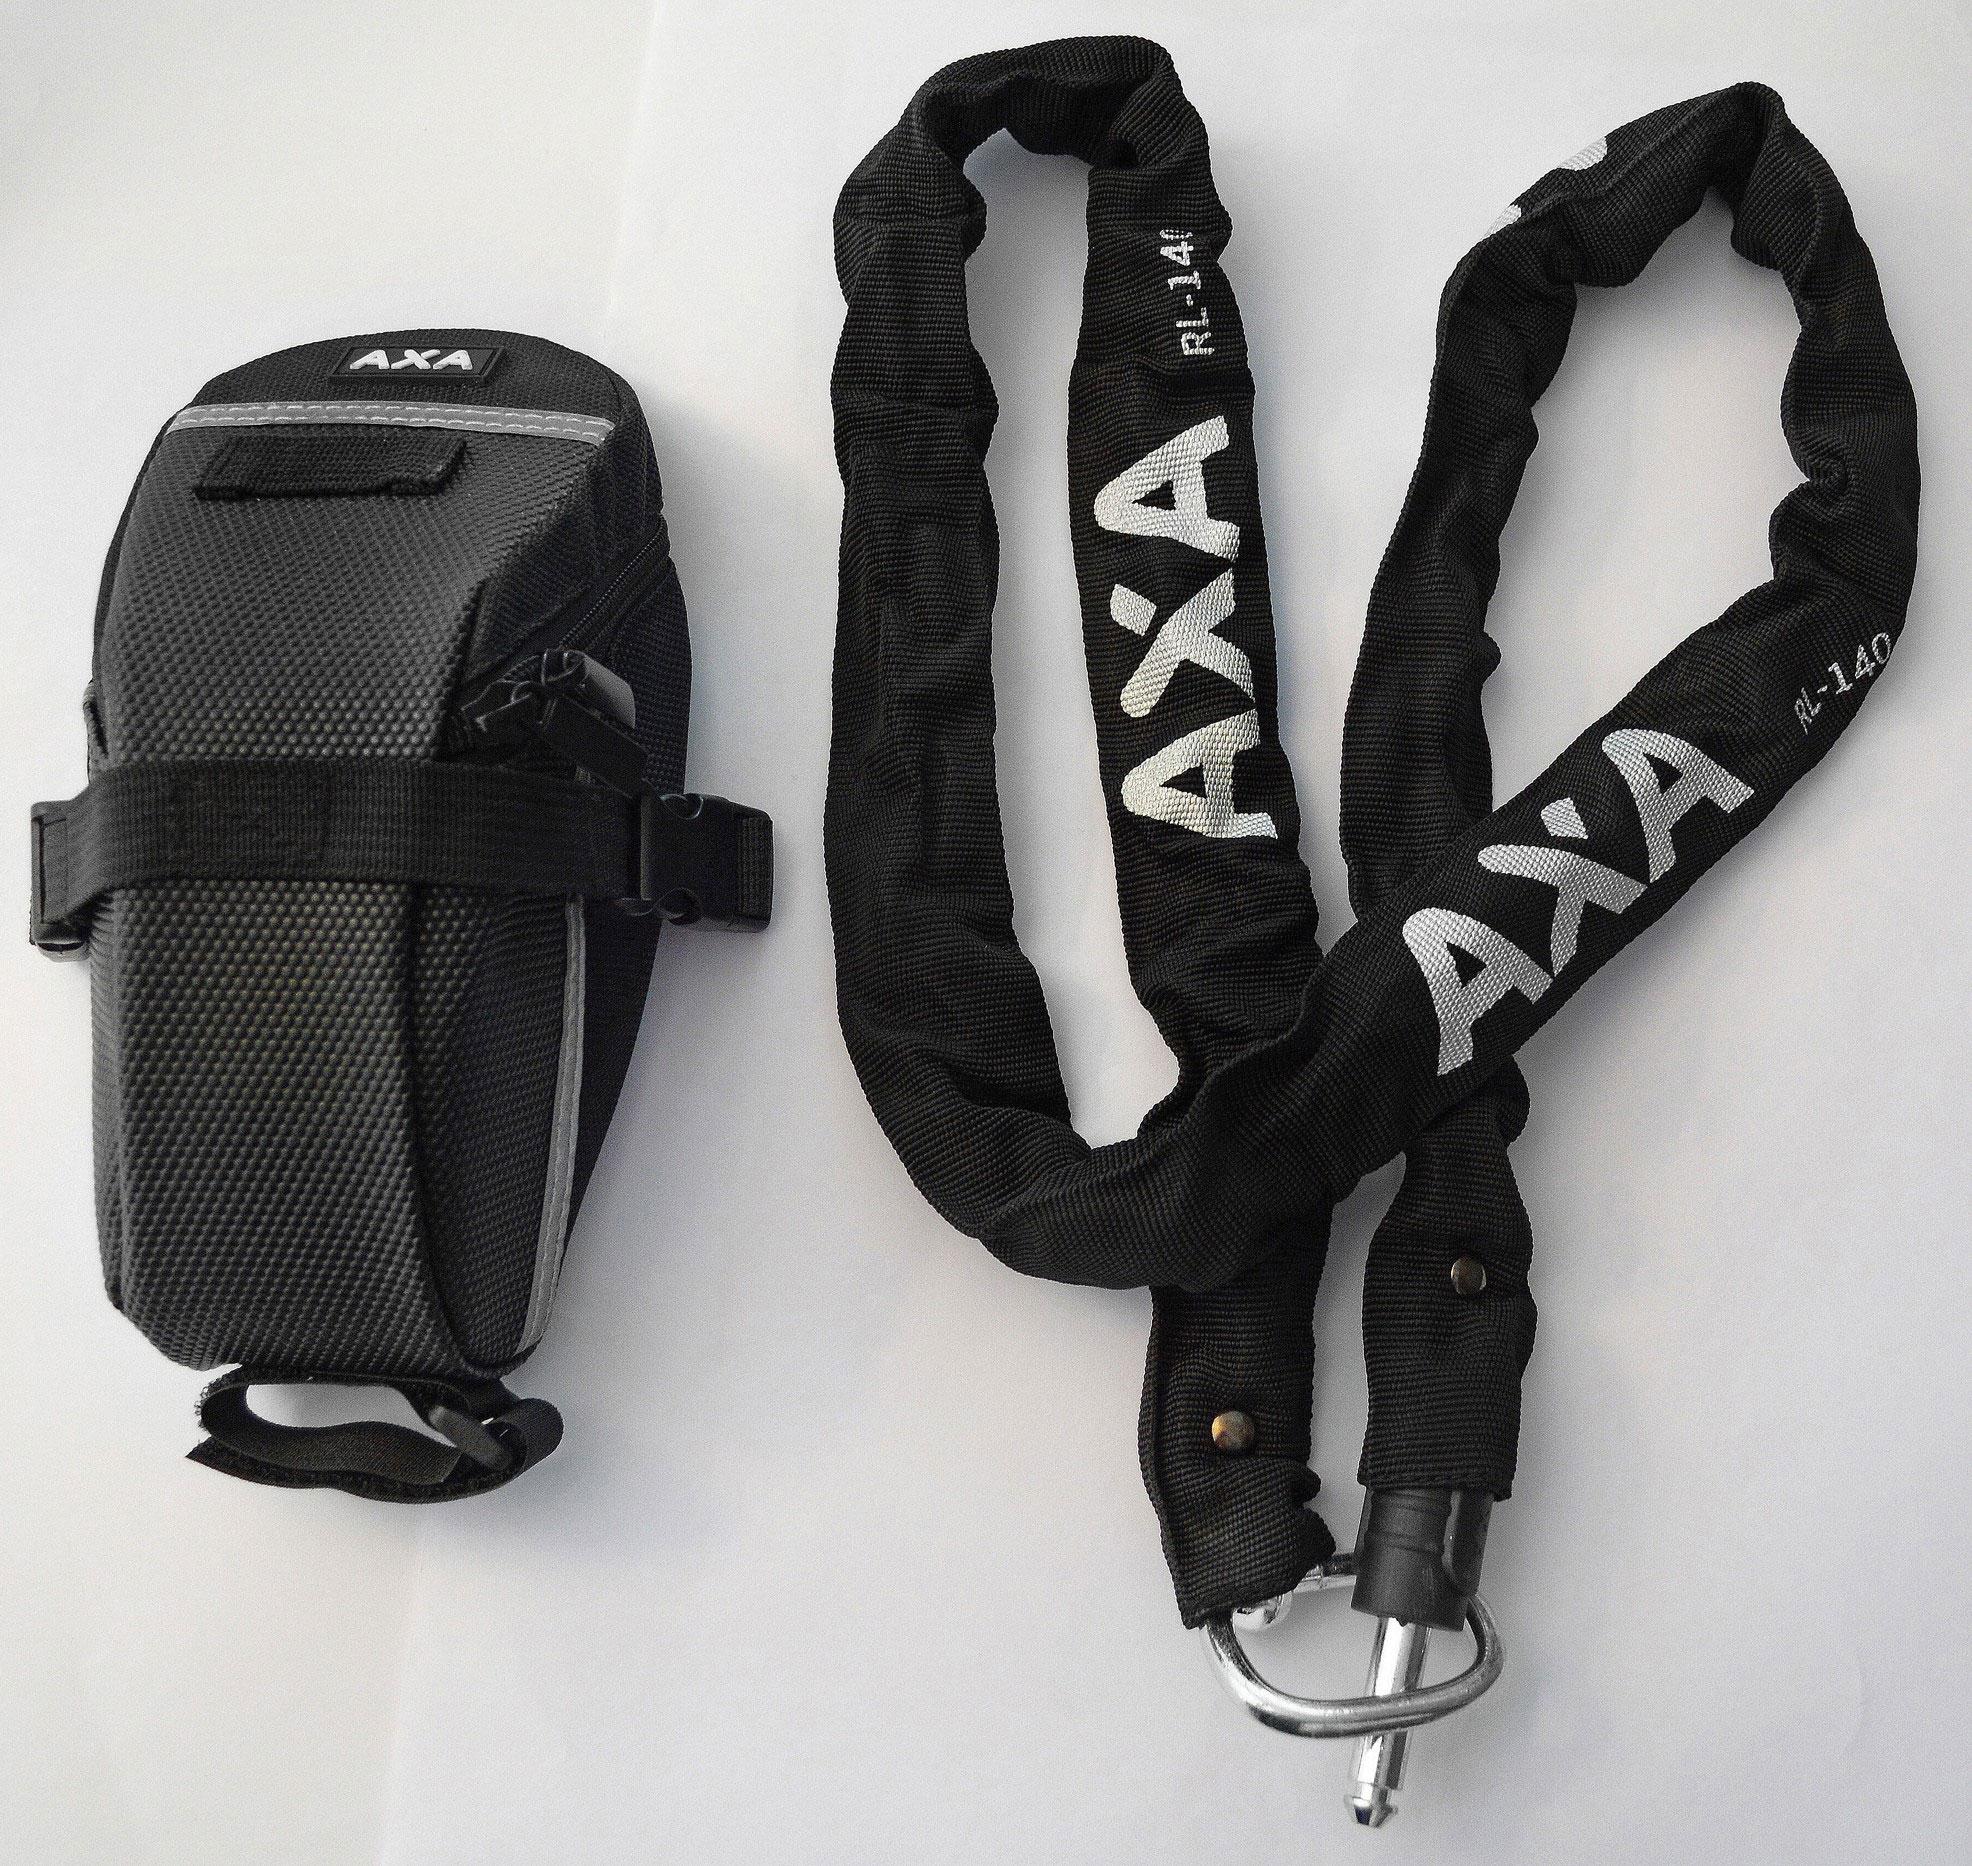 AXA - RLC 140 mit Tasche